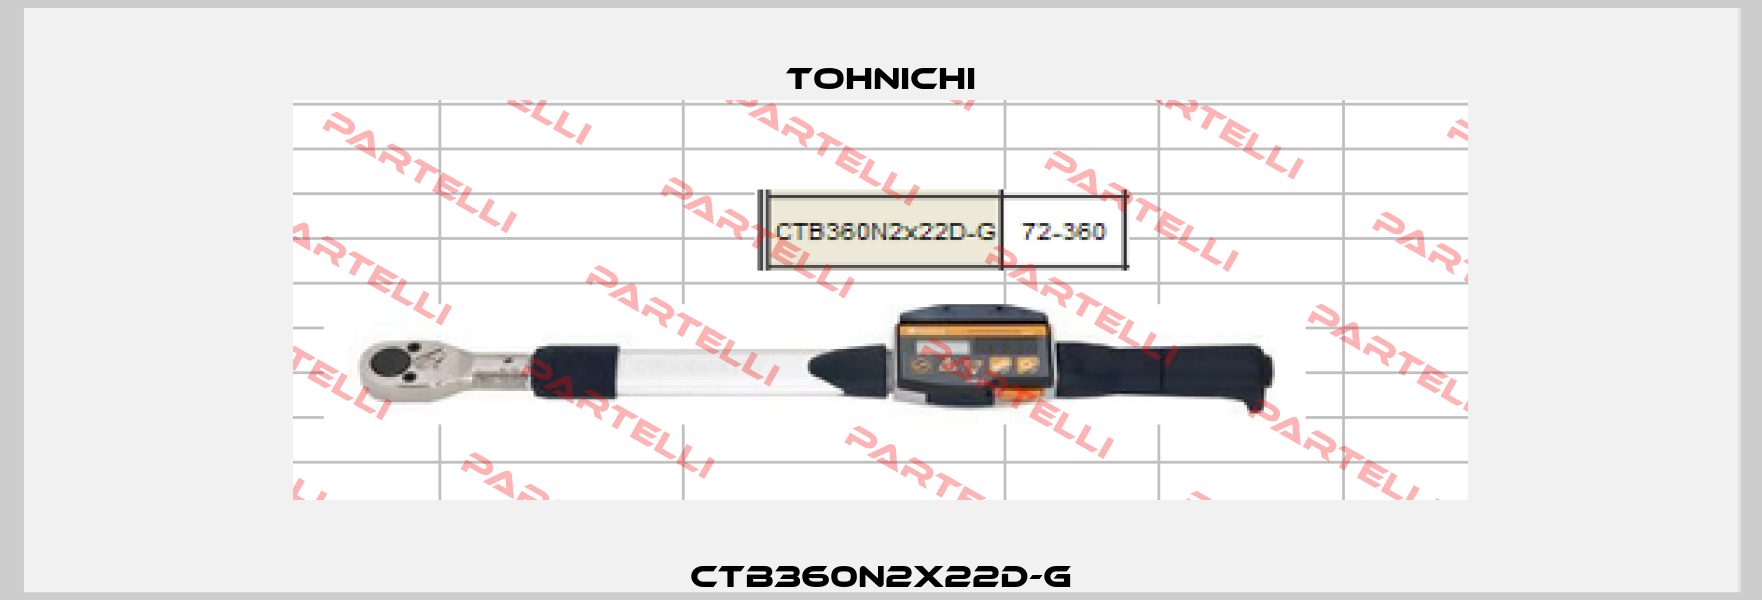 CTB360N2X22D-G Tohnichi